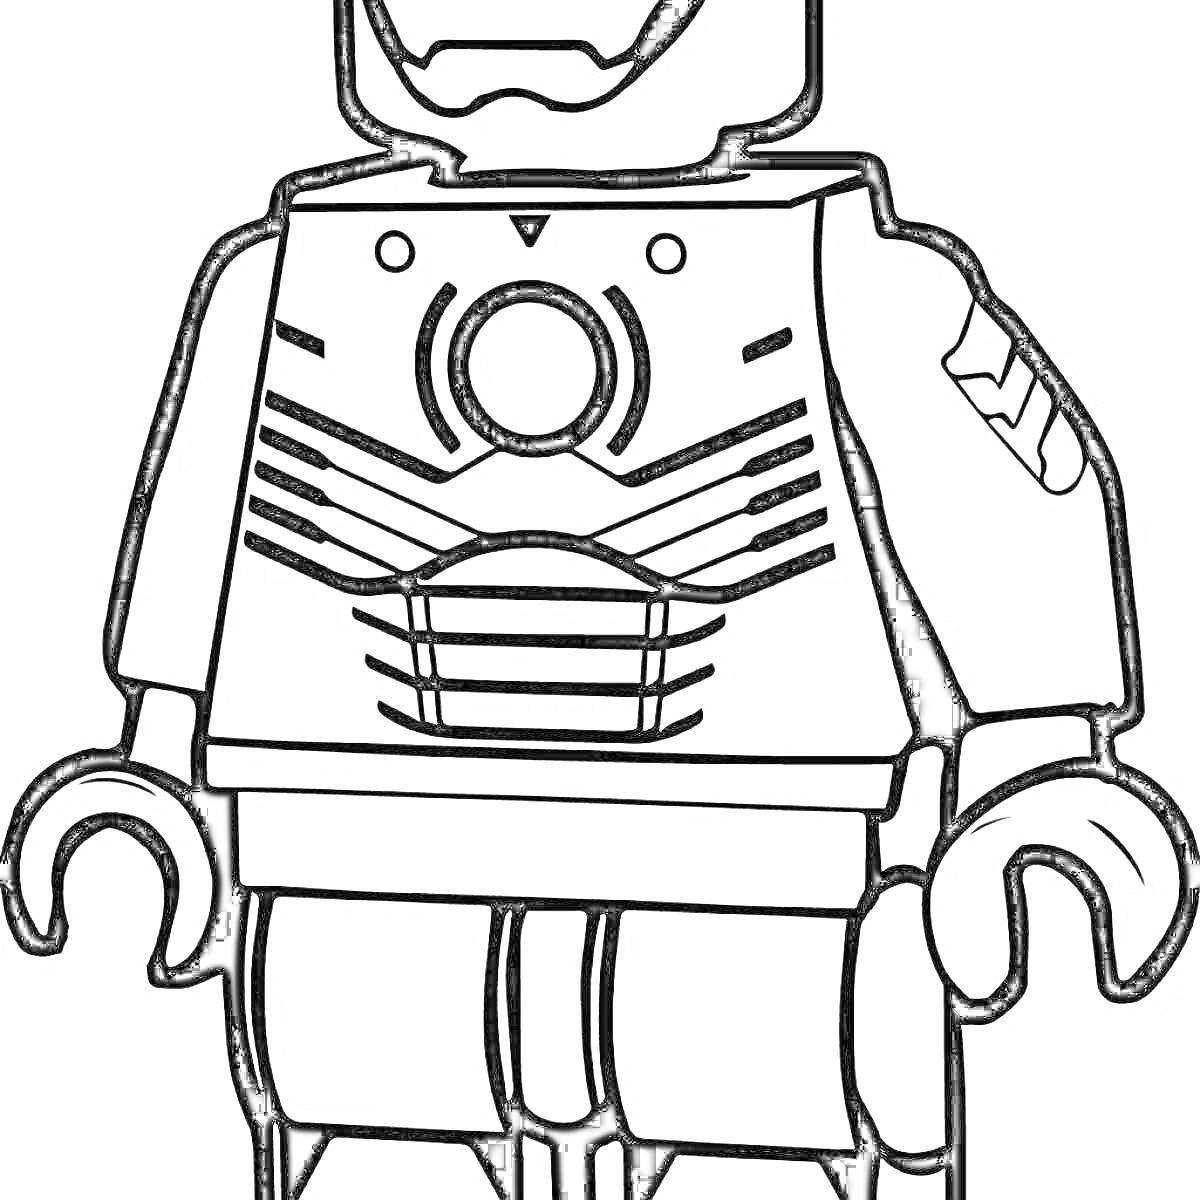 Раскраска Раскраска Лего Железный Человек в бронекостюме с деталями на груди и правом плече